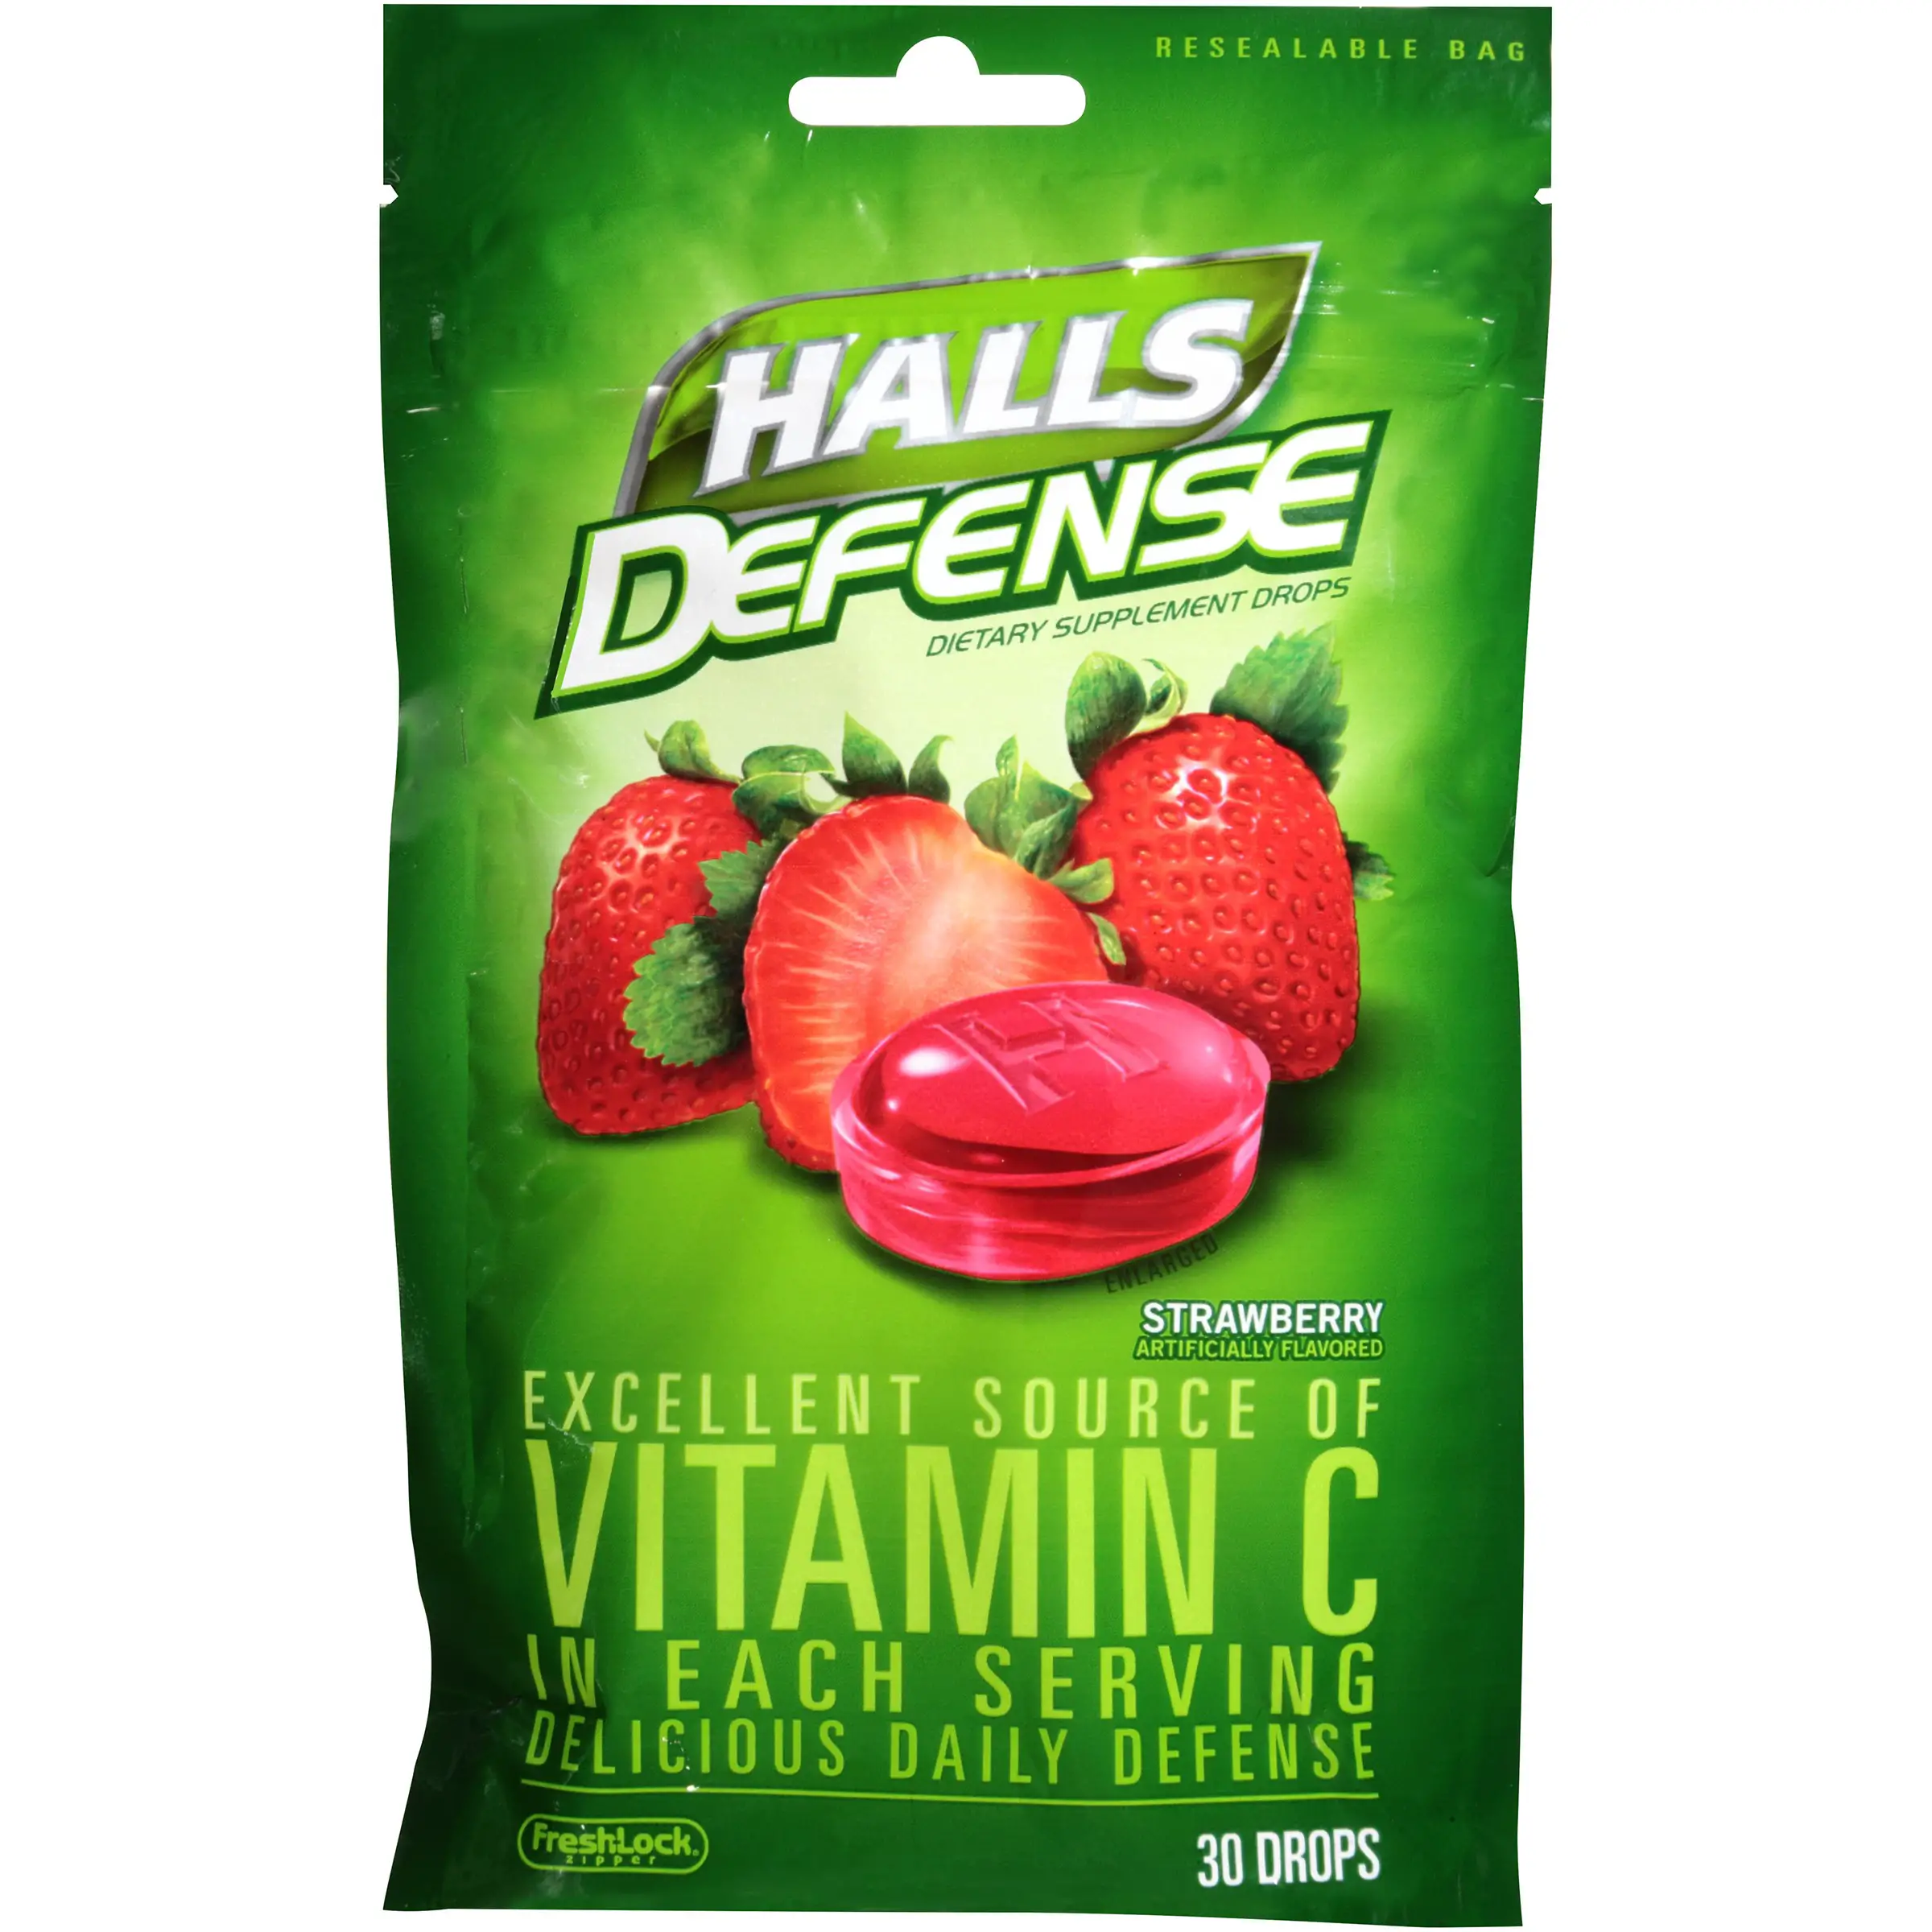 Halls Defense Vitamin C Supplement Drops, Strawberry, 30 Ct